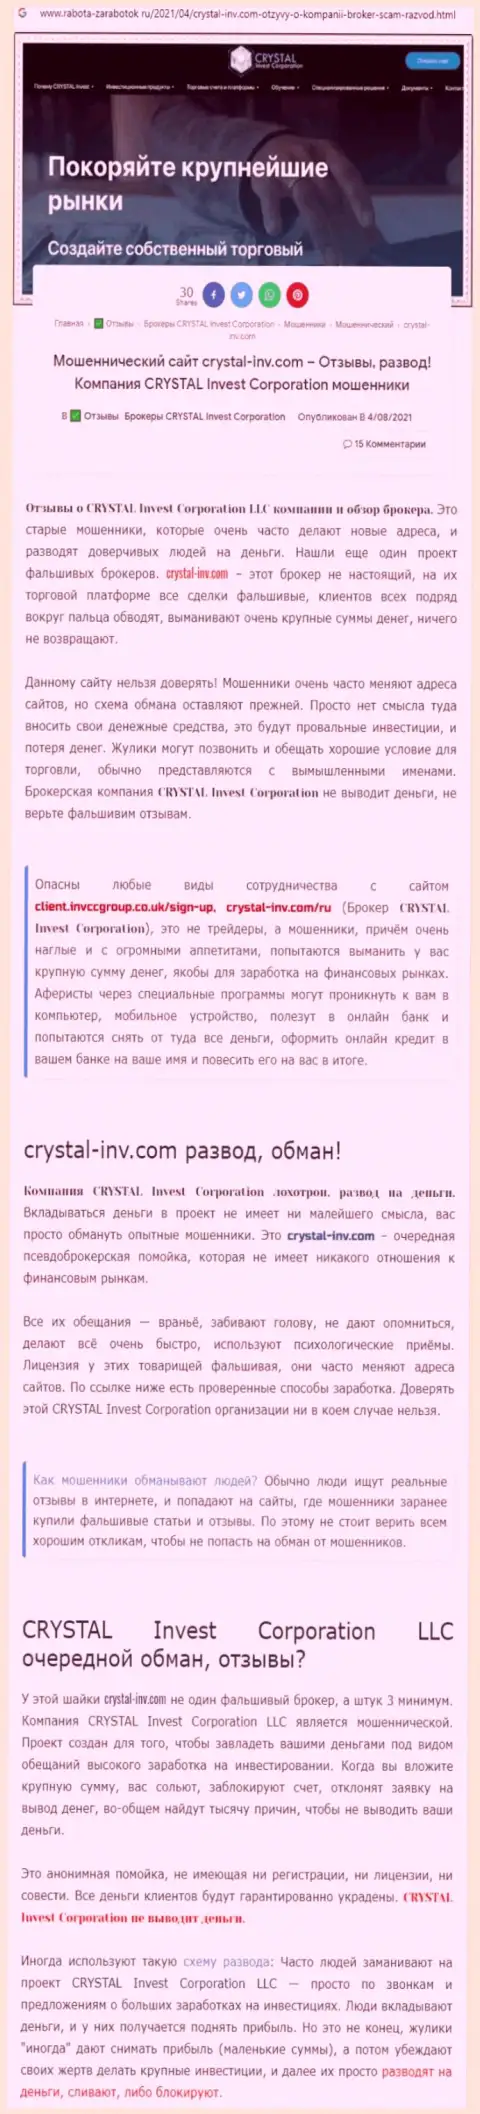 Материал, разоблачающий организацию Crystal Invest, взятый с онлайн-ресурса с обзорами разных организаций